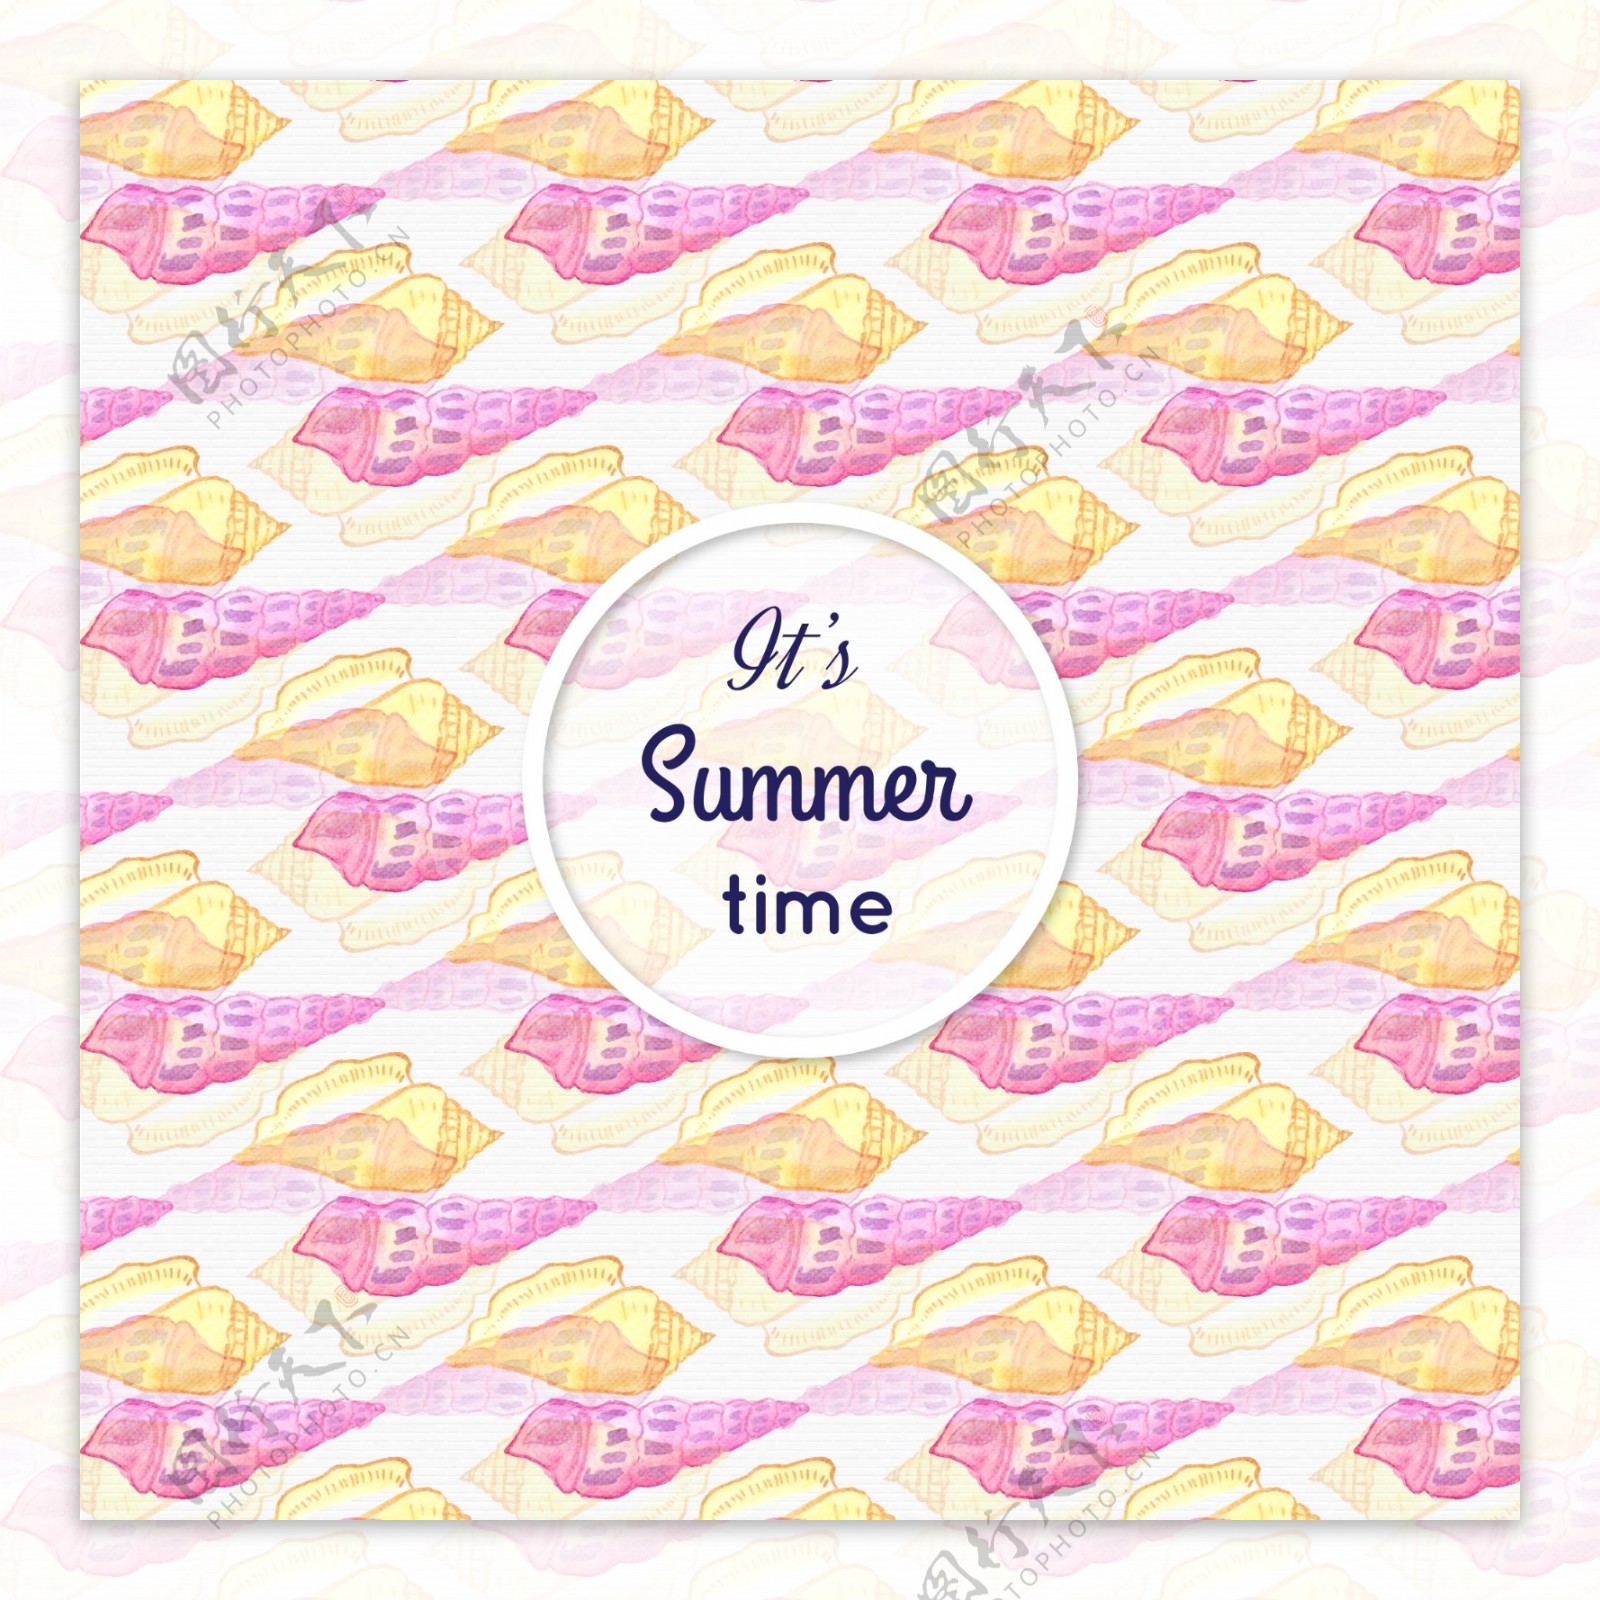 夏日清新粉色海鲜背景图片